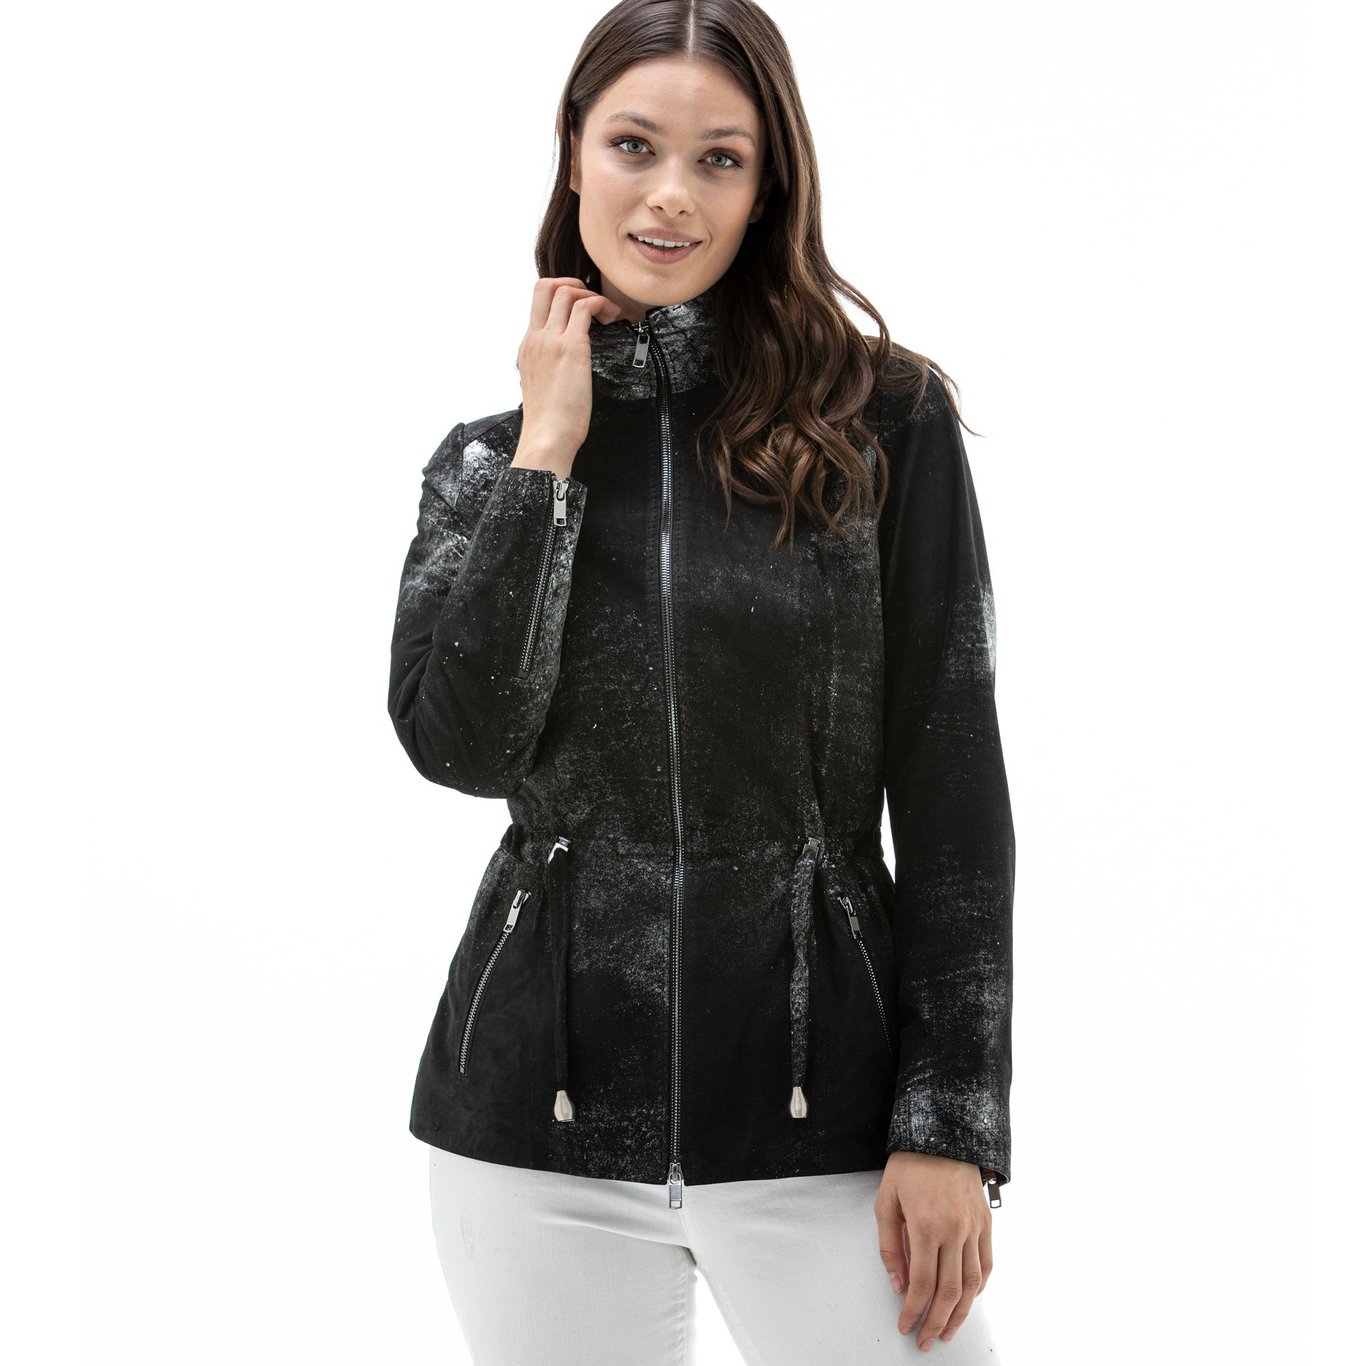 Ladies printed suede lamb leather jacket.